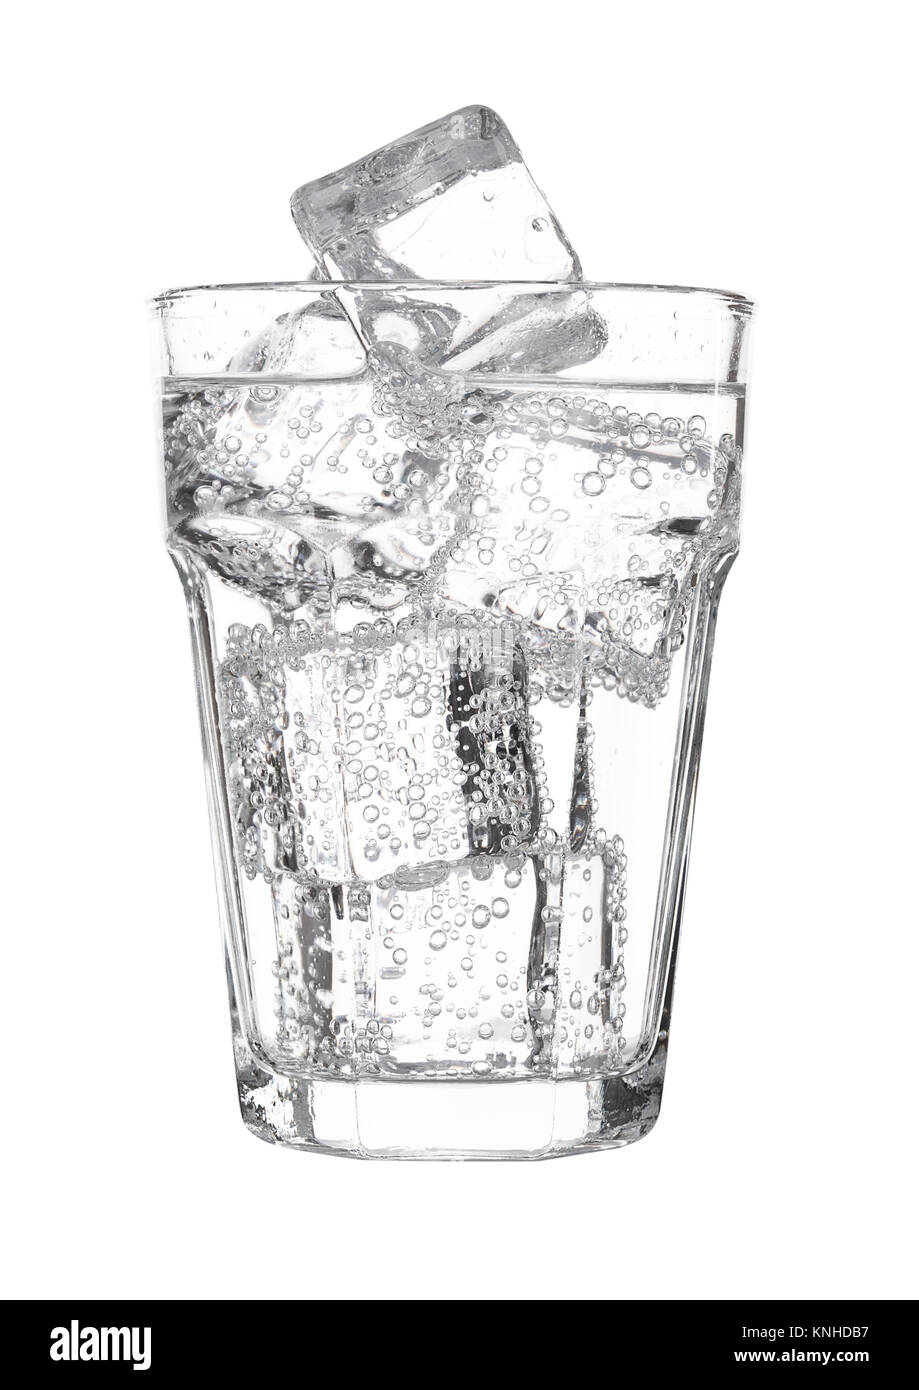 Glas Wasser mit Kohlensäure Soda drink Limonade mit Eis auf weißem Hintergrund Stockfoto